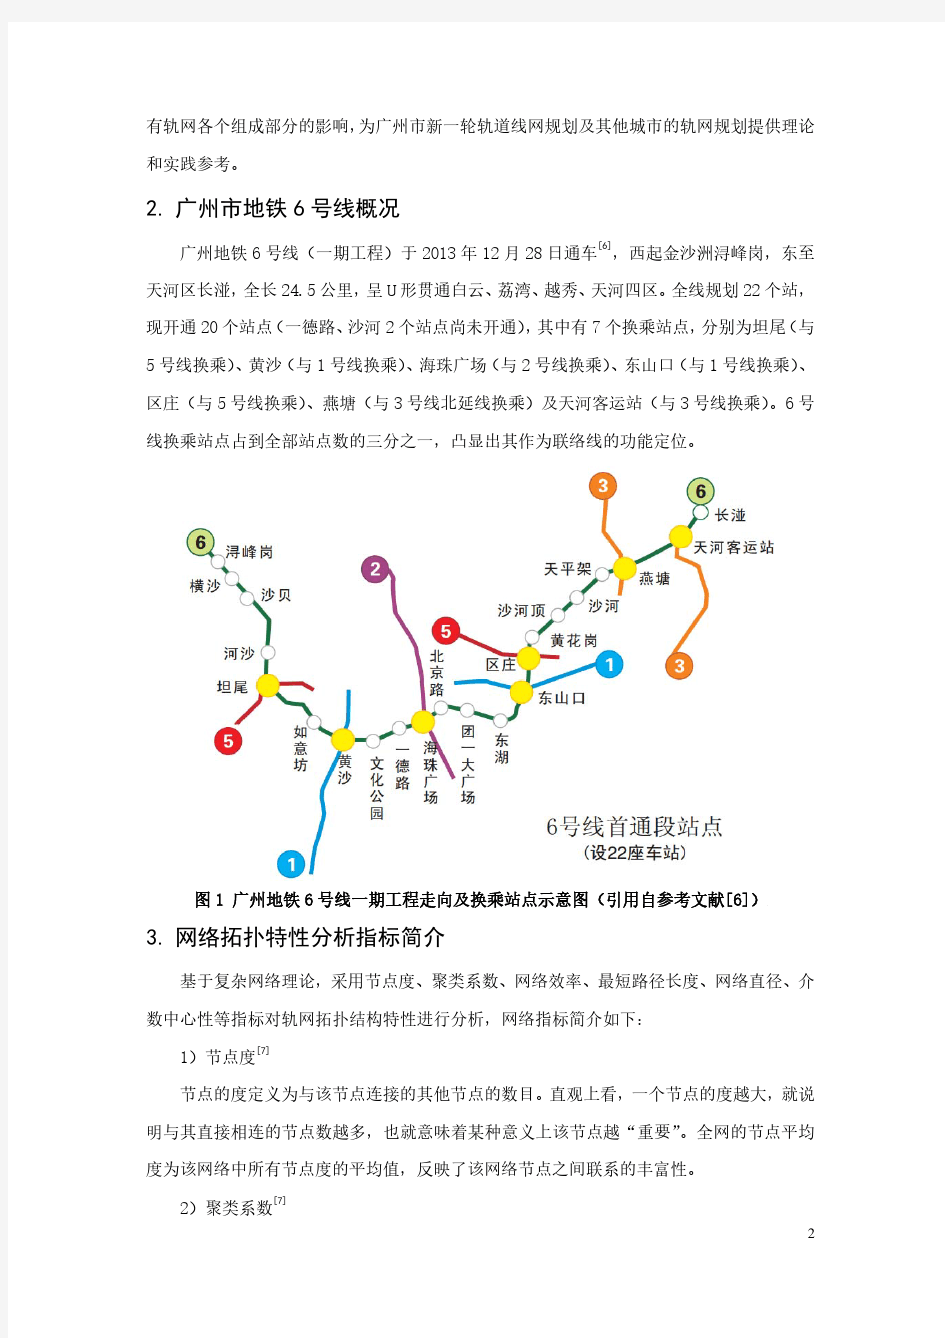 107-广州地铁6号线对广州市轨道网络拓扑特性的影响分析